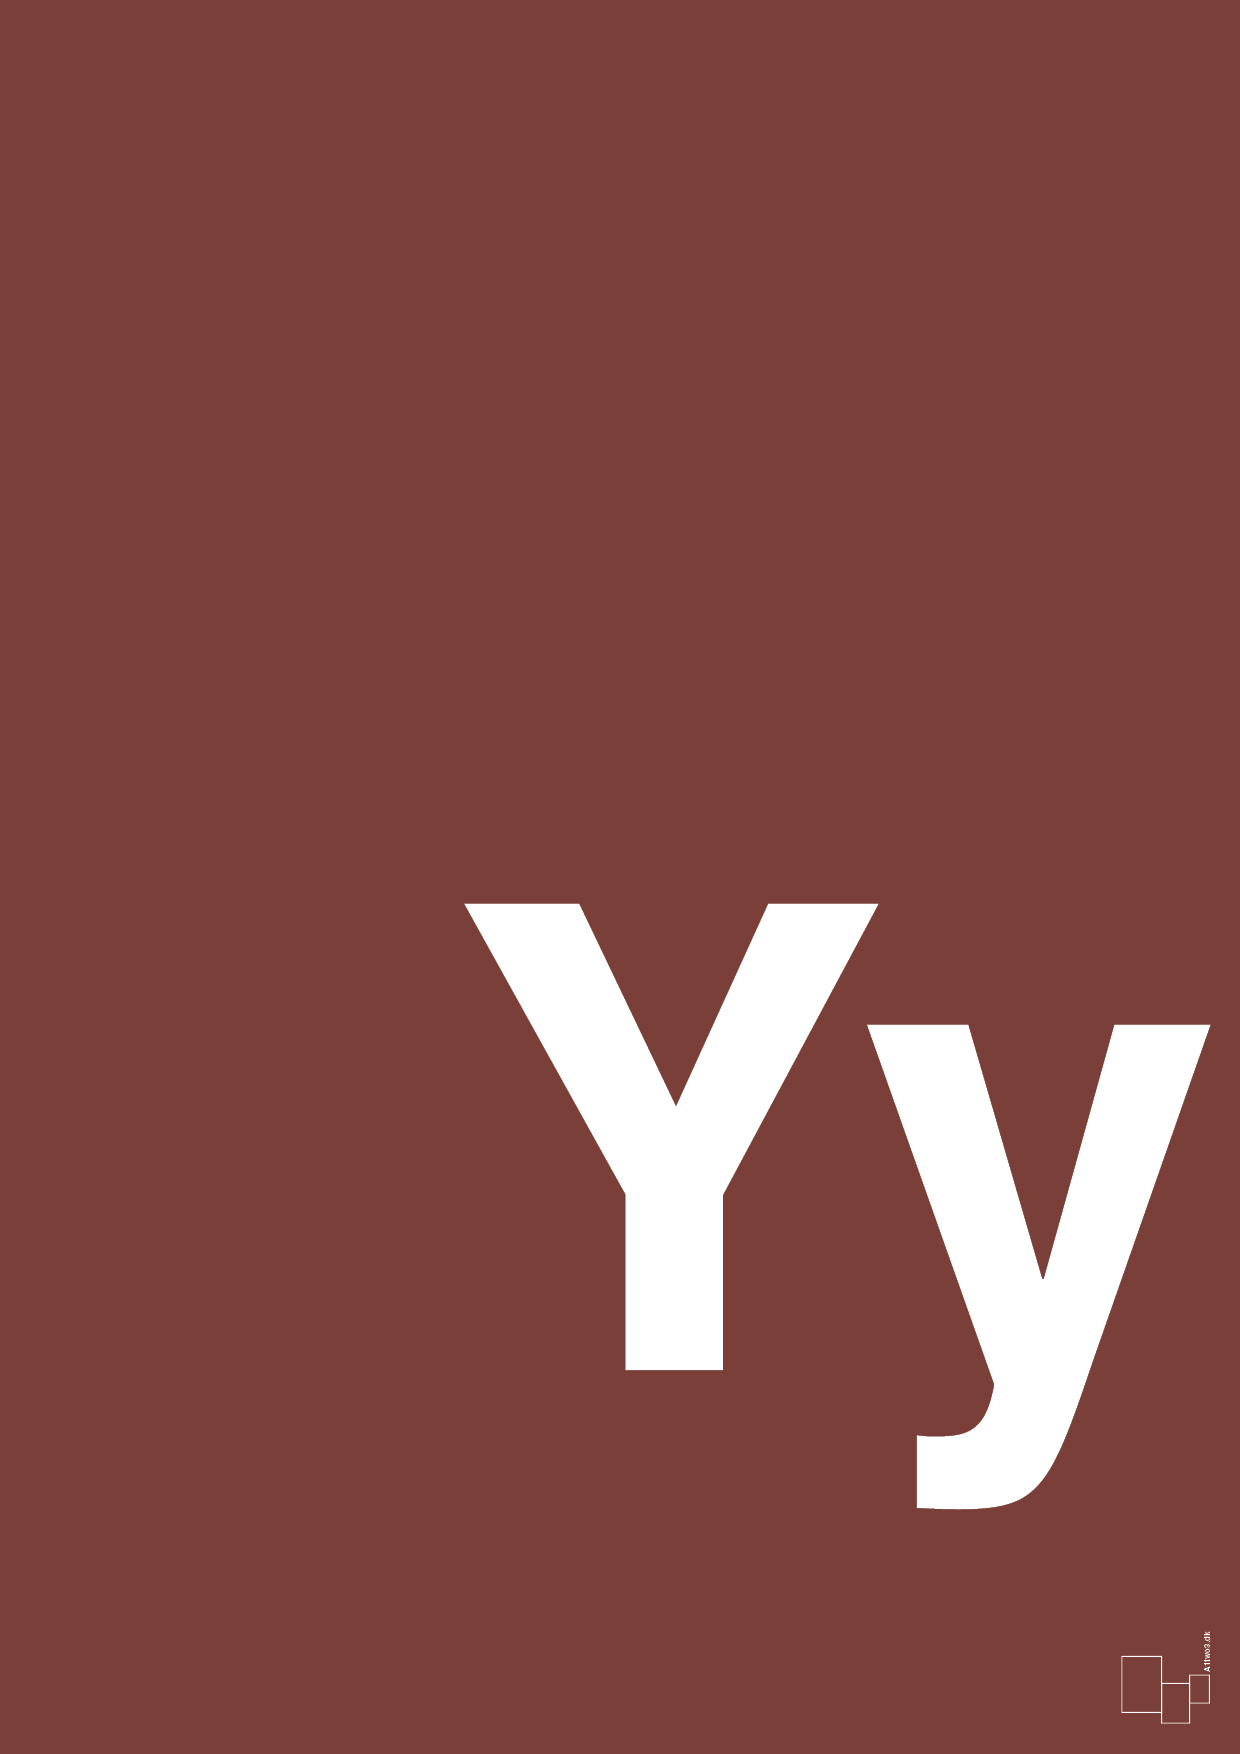 bogstav yy - Plakat med Bogstaver i Red Pepper